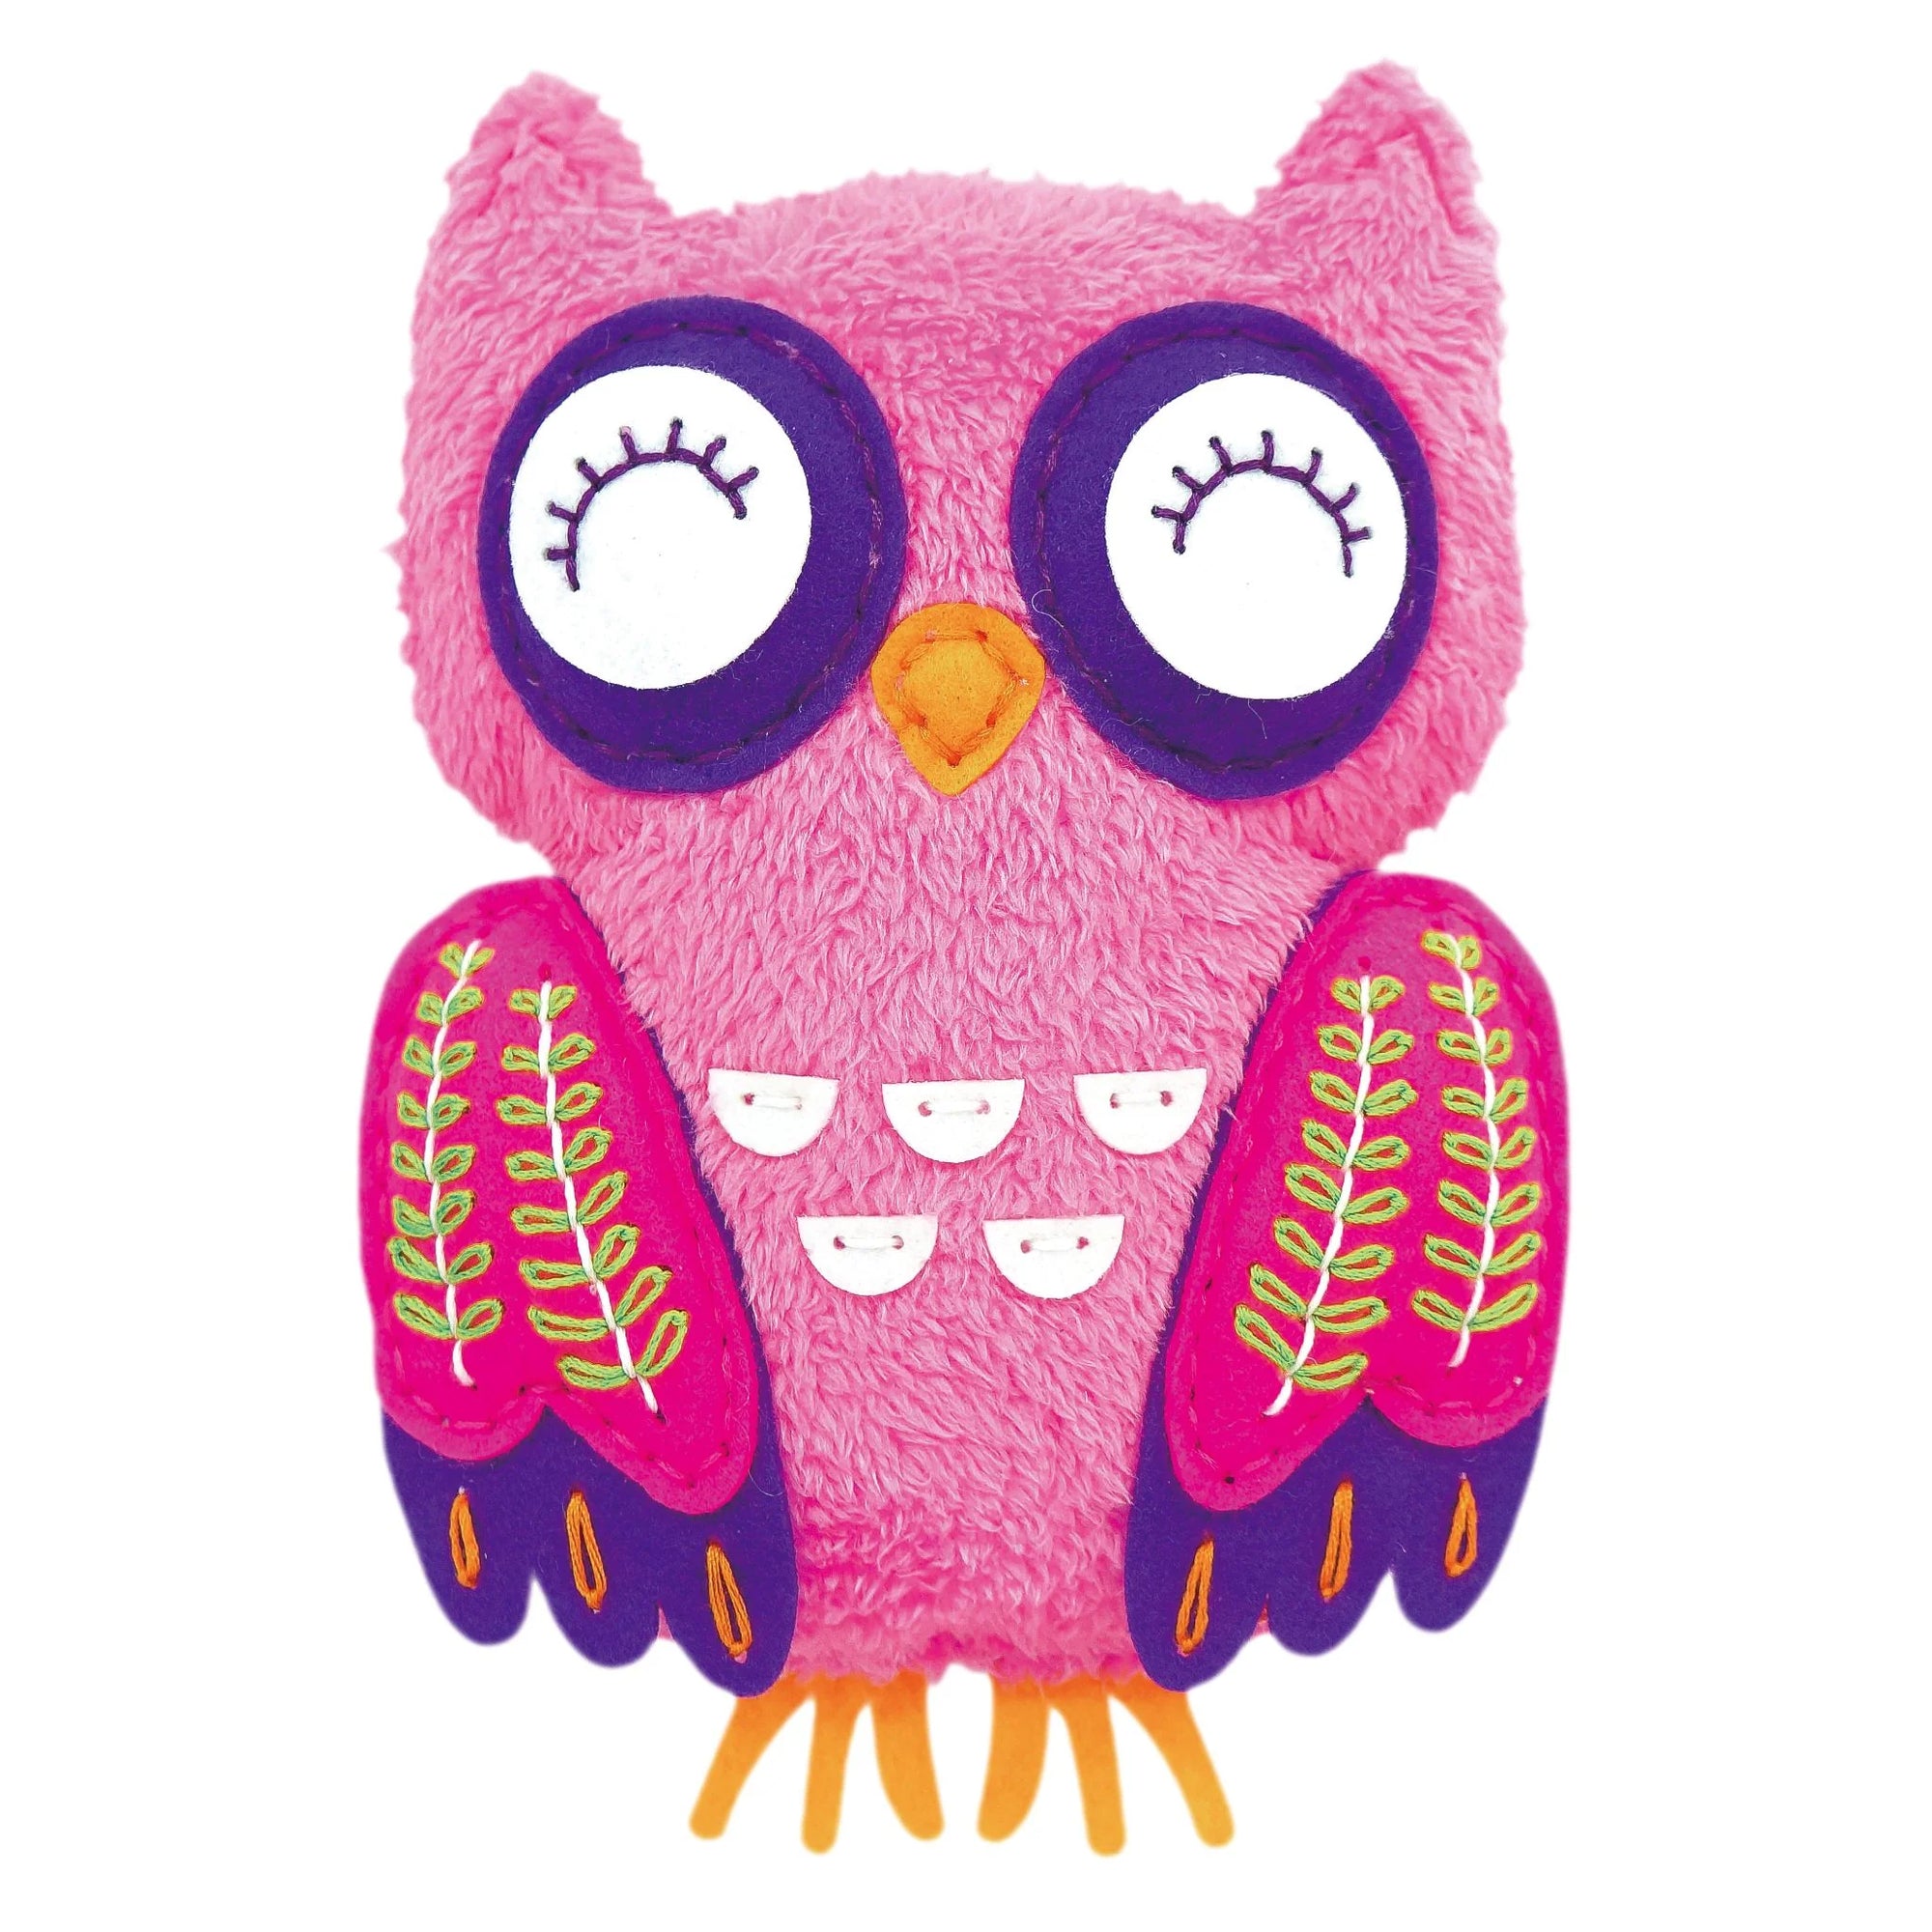 Avenir DIY Sewing Doll - Owl